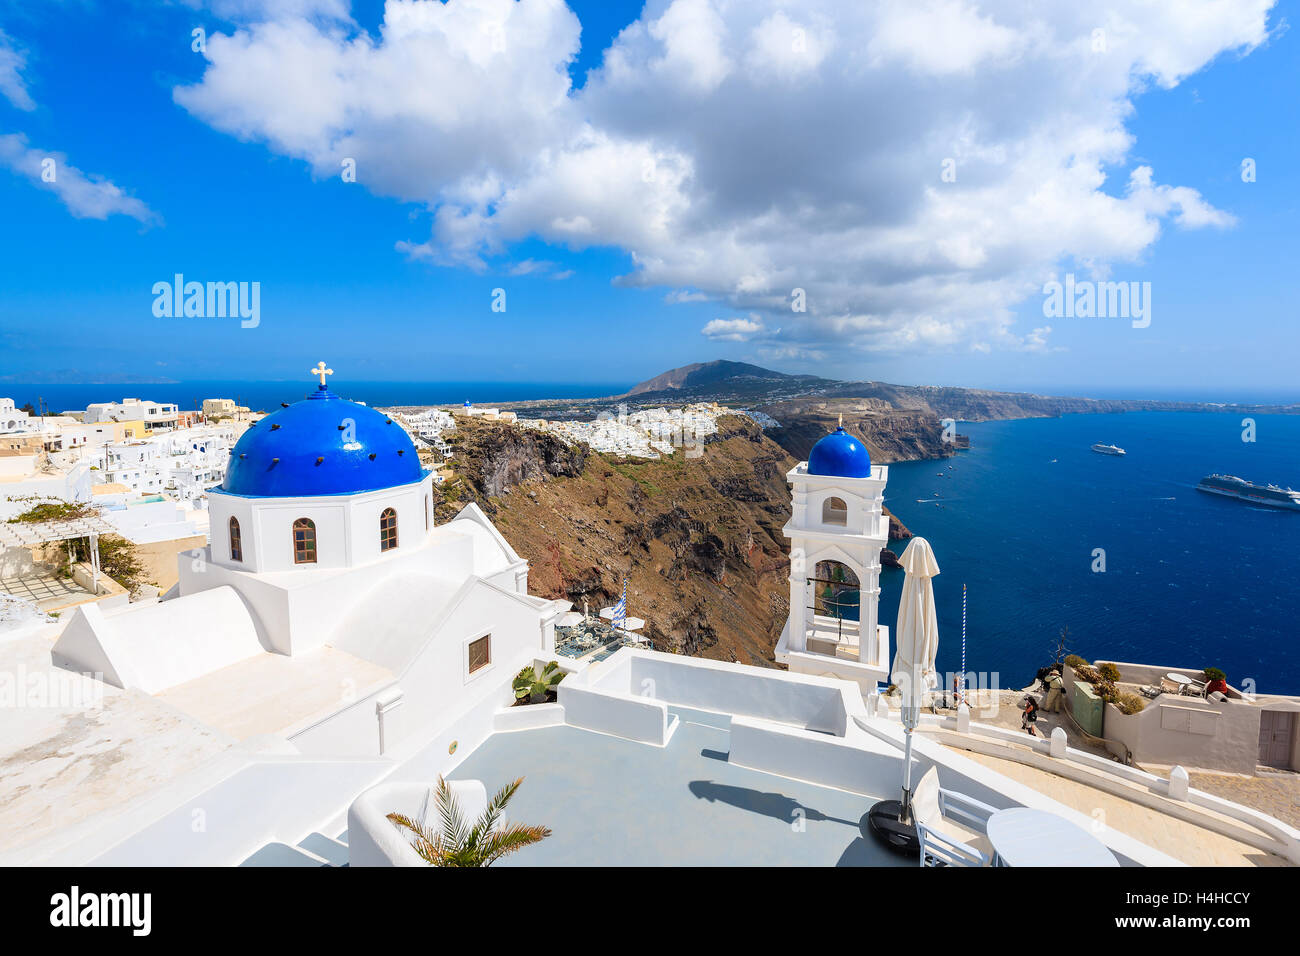 Église avec dôme bleu blanc à Imerovigli village et mer en arrière-plan, l'île de Santorin, Grèce Banque D'Images